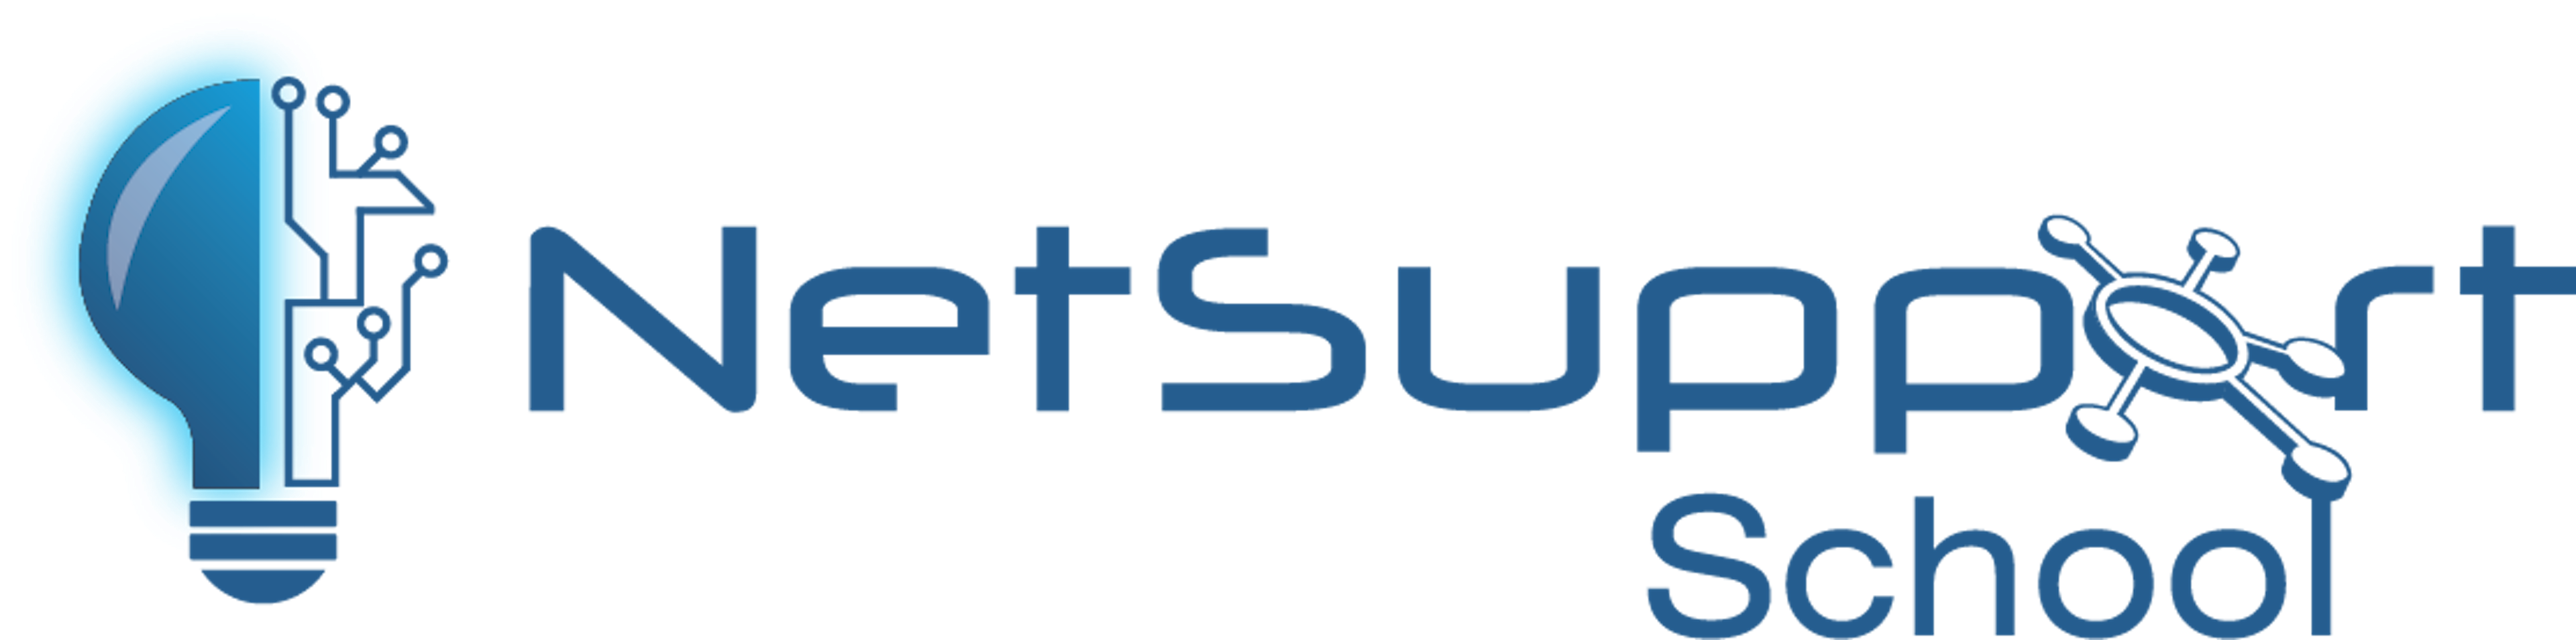 NetSupport School Logo